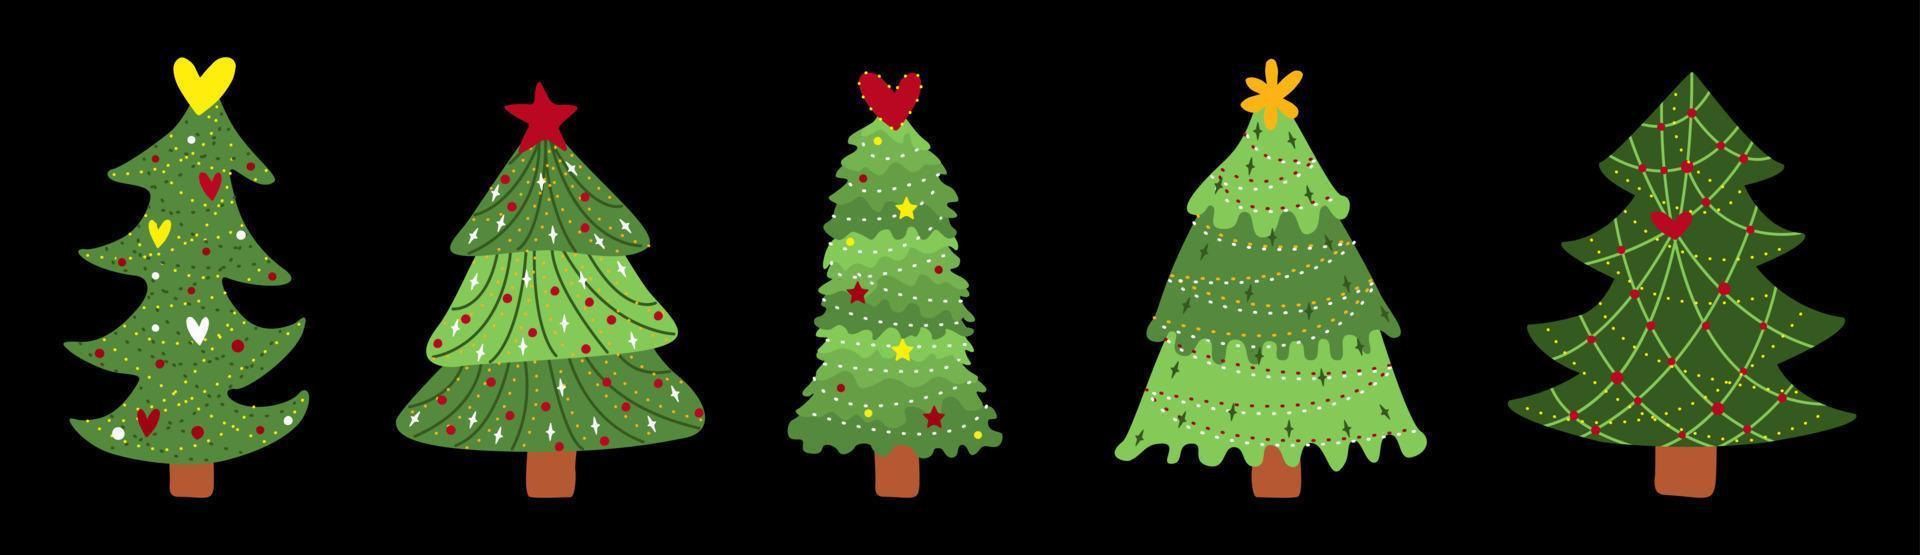 julgran. symbol för det nya året. uppsättning tallar med dekor, girlanger, ljus och stjärnor. vektor illustration isolerade.